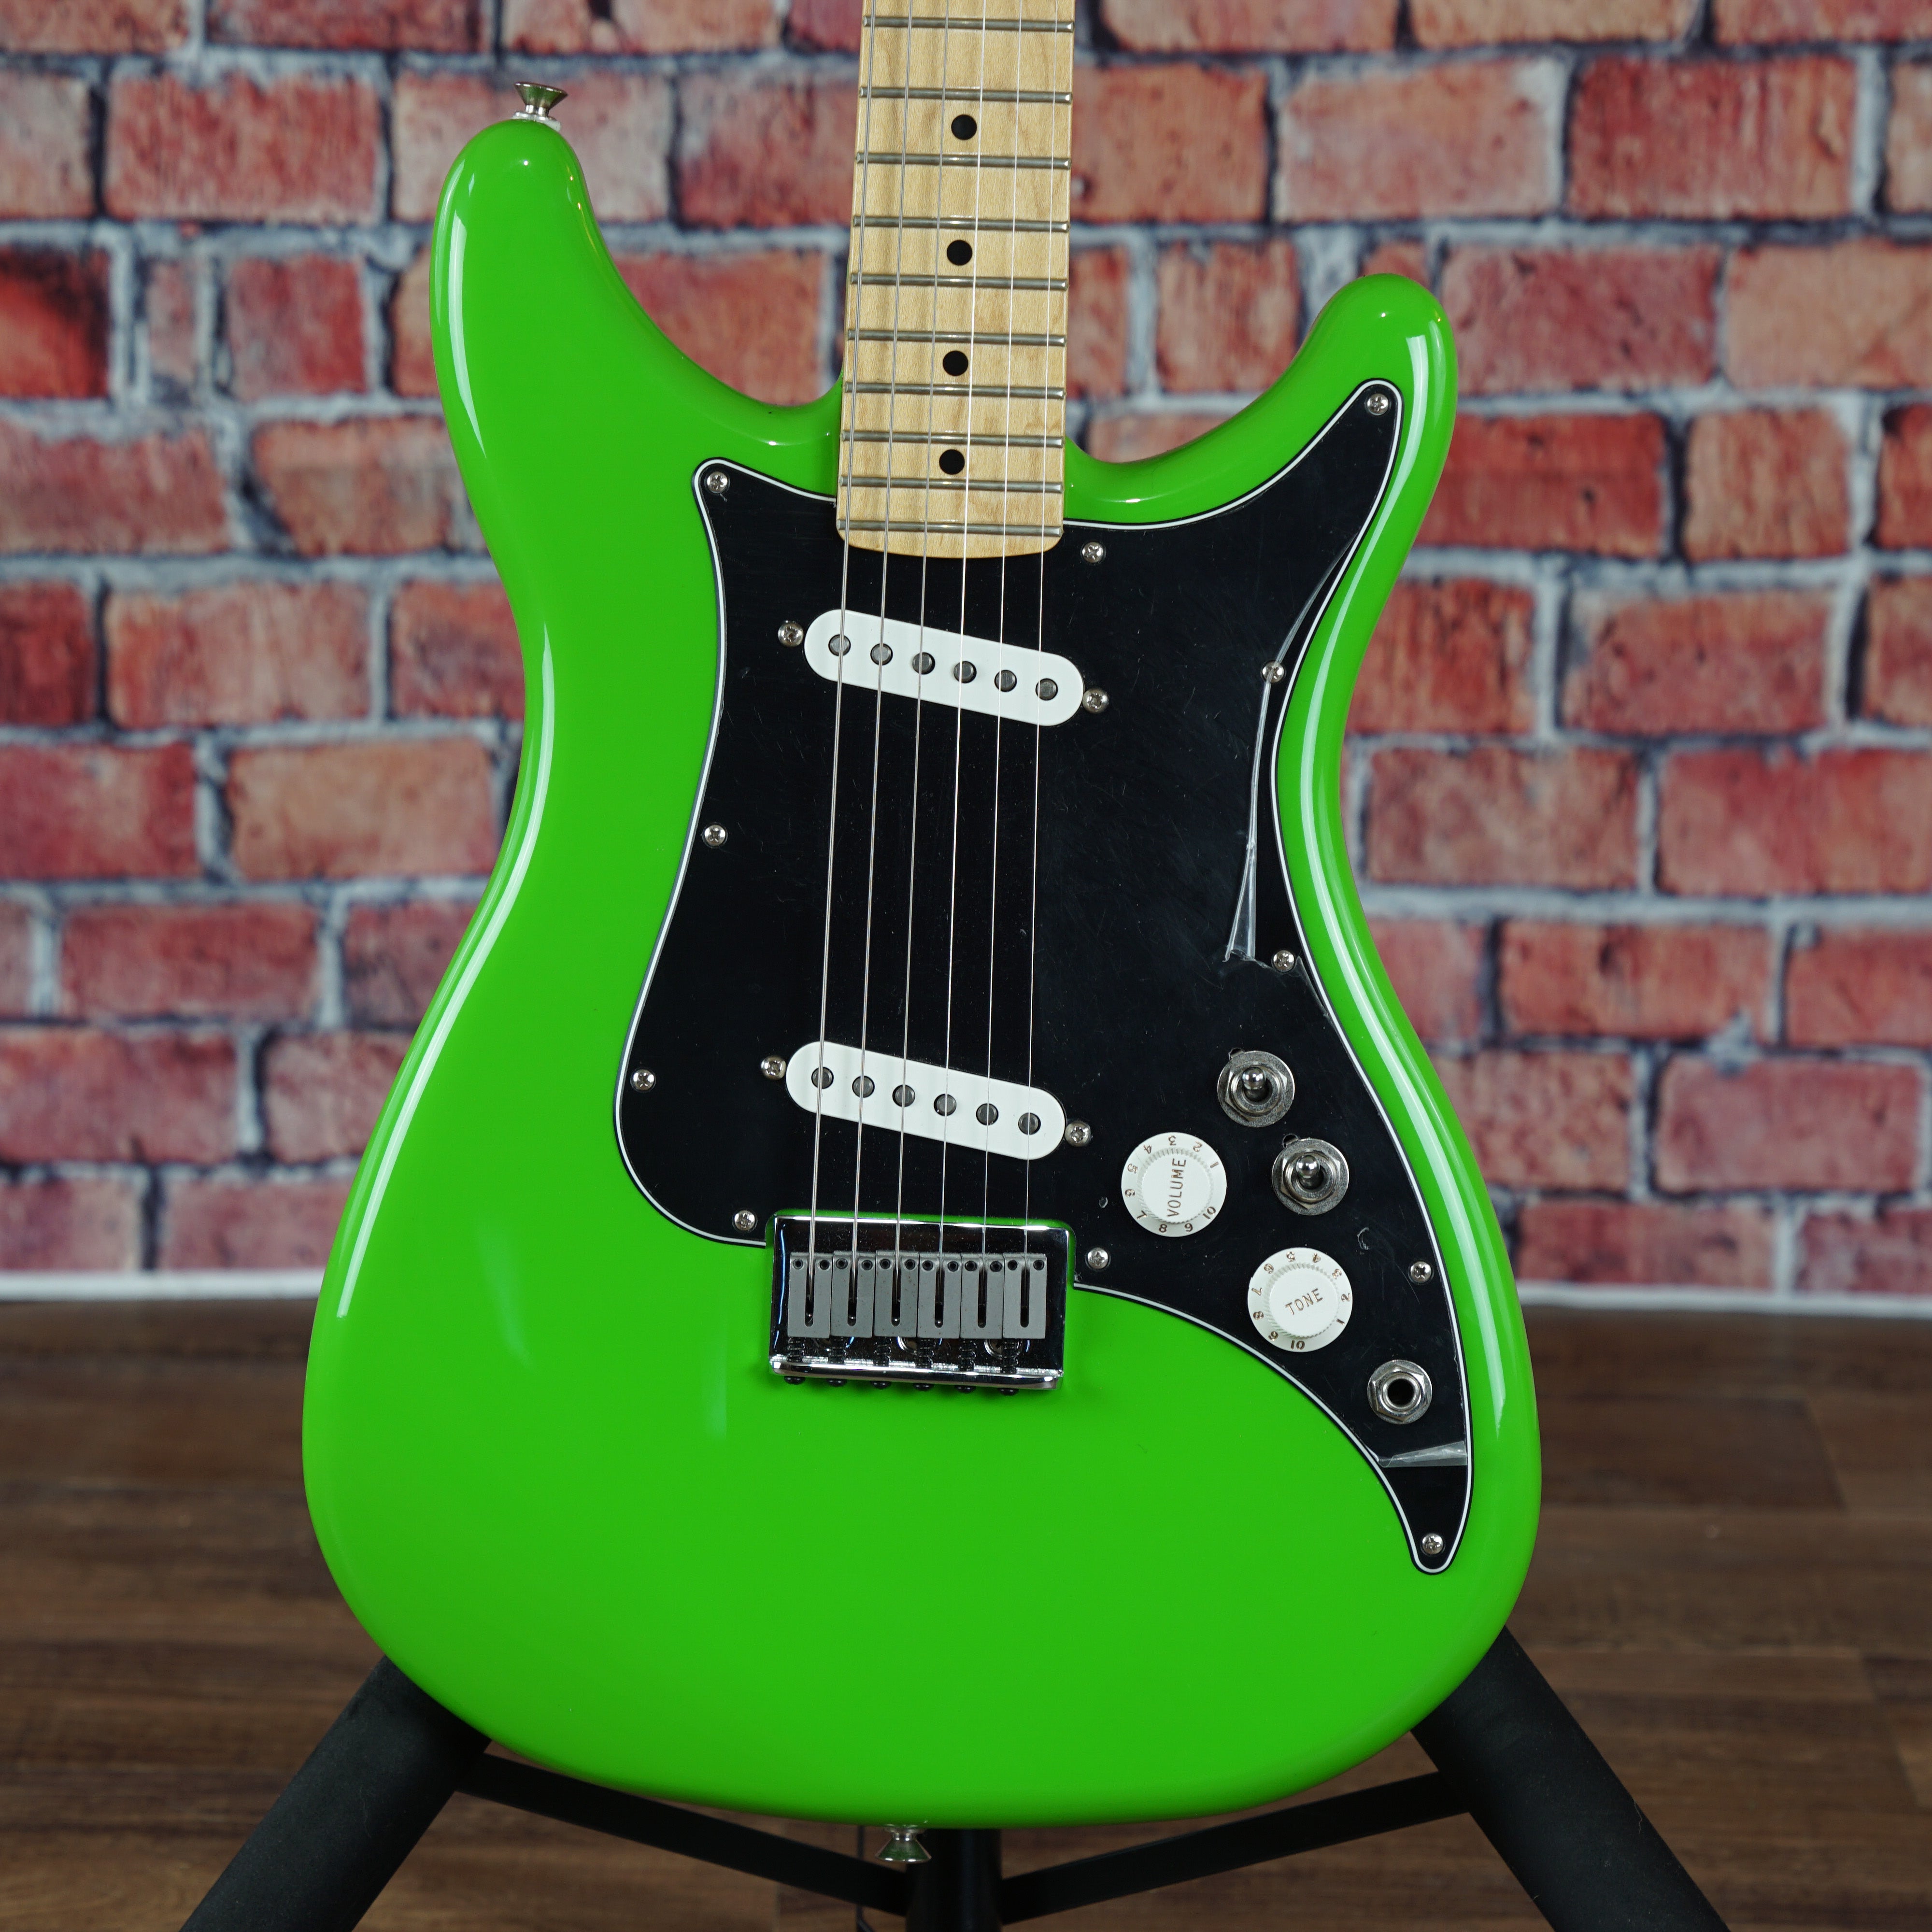 Fender Player Lead II, Maple Fingerboard, Neon Green